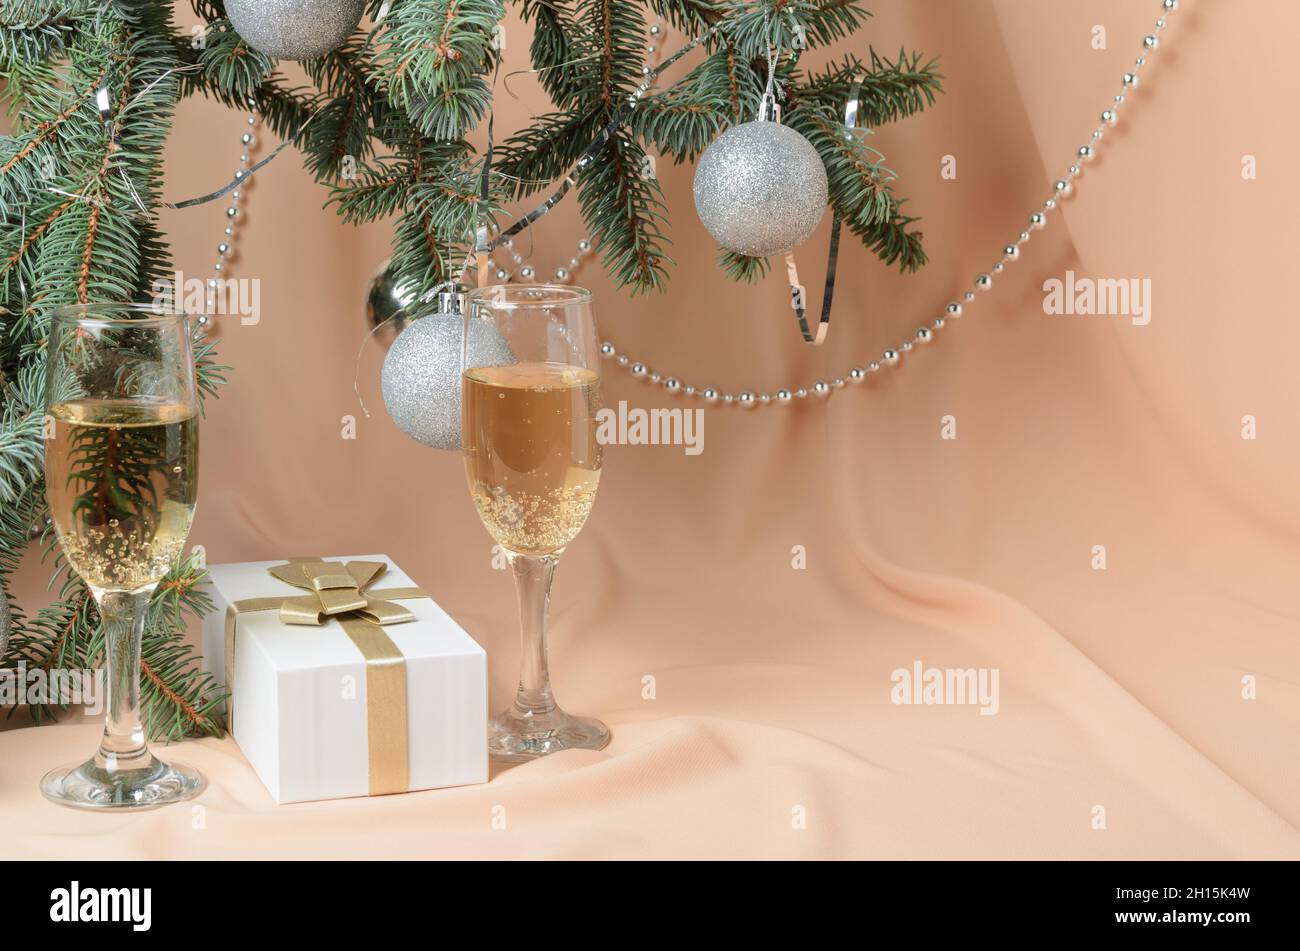 Weihnachten. Eine Neujahrskomposition aus Zweigen eines Weihnachtsbaums, verziert mit silbernen Kugeln, einer Geschenkbox, Sektgläsern auf einer Backgrou Stockfoto